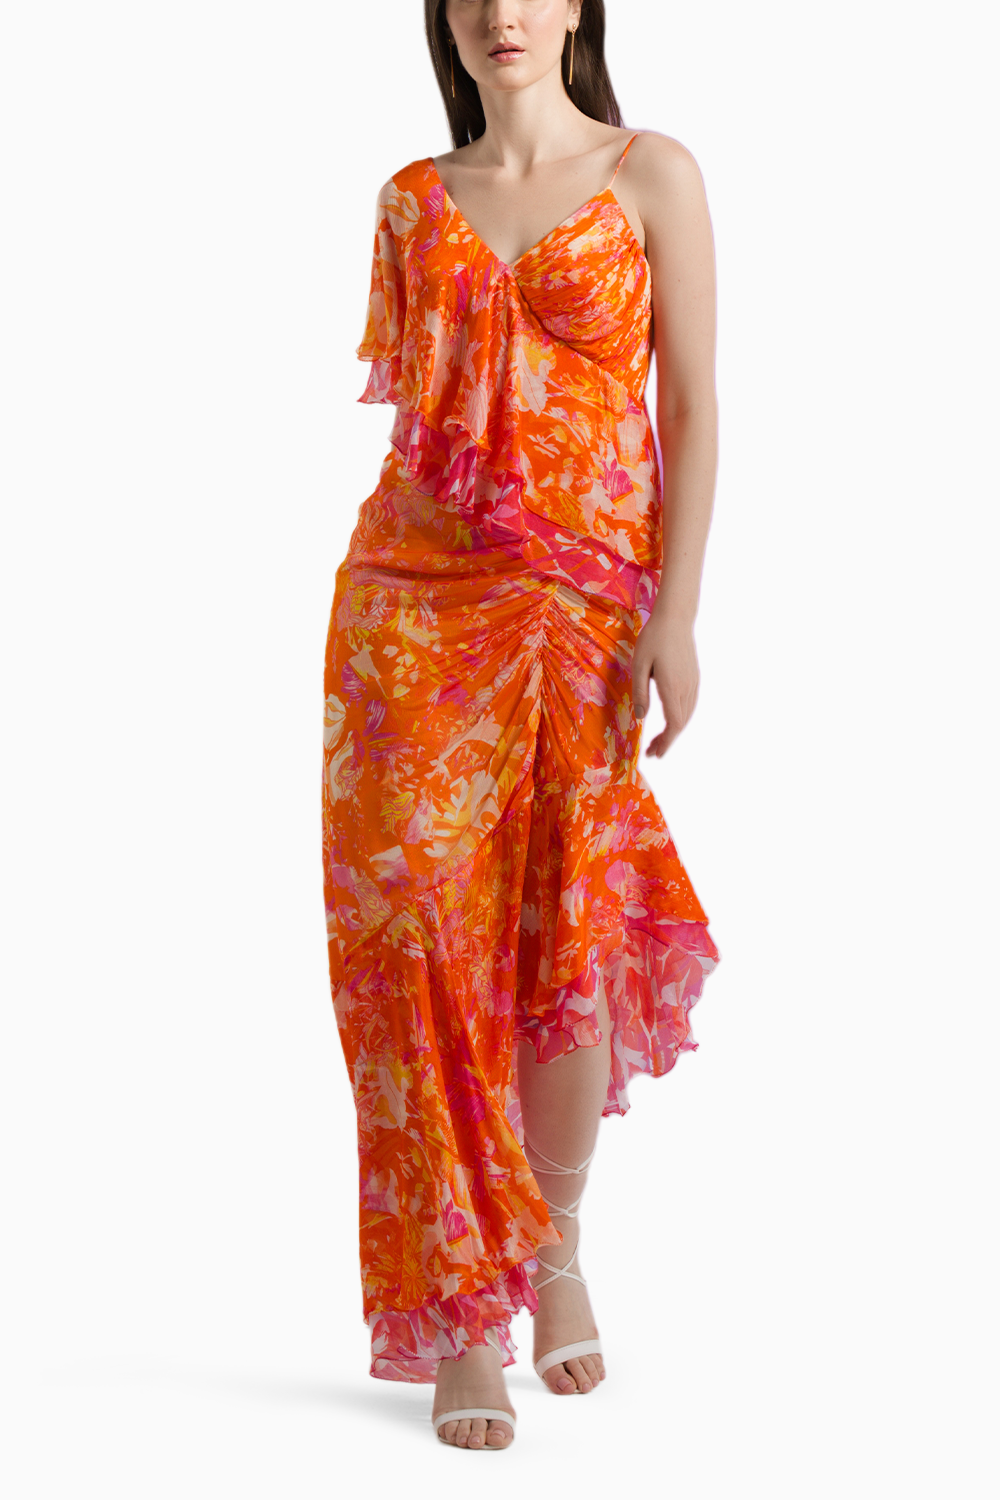 Saffron Misty Fimme Dress